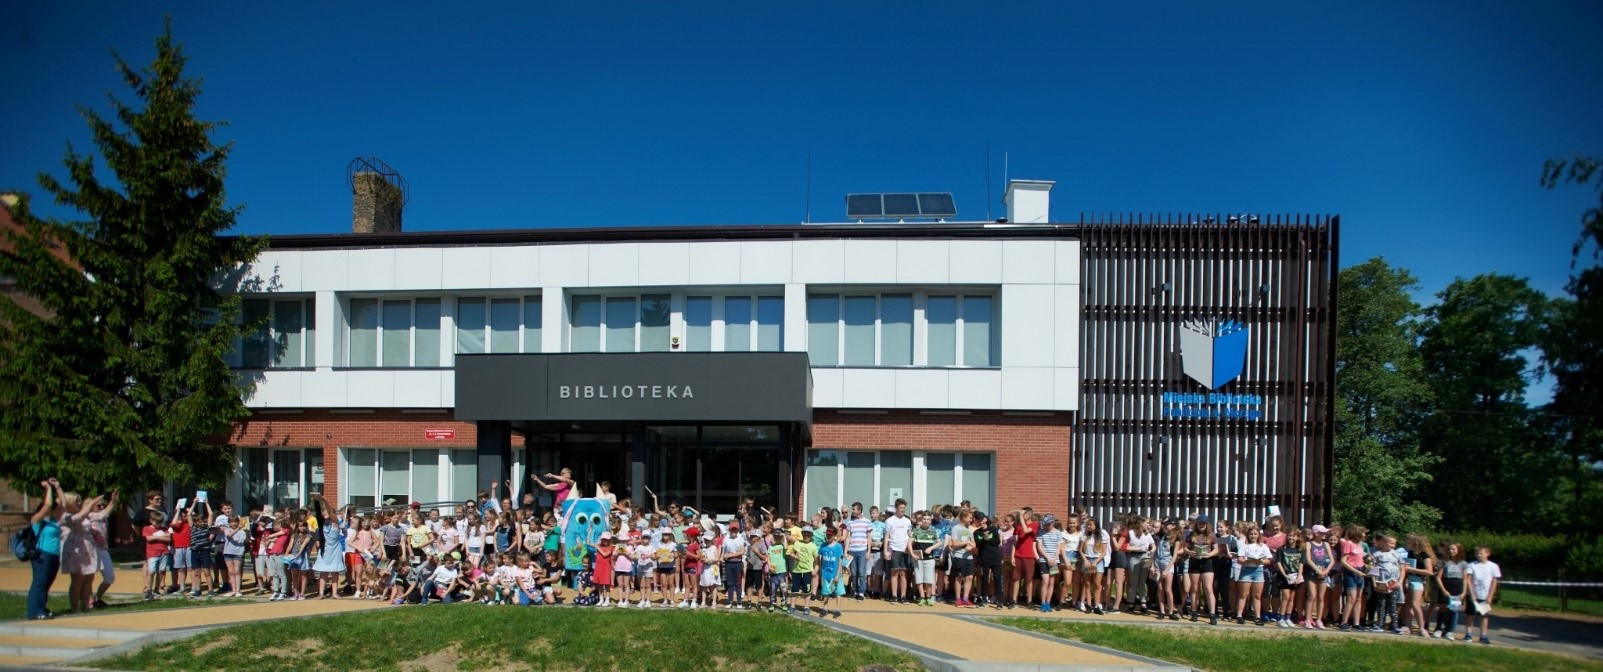 Duża grupa dzieci i maskotka Czytosław stoją przed budynkiem biblioteki